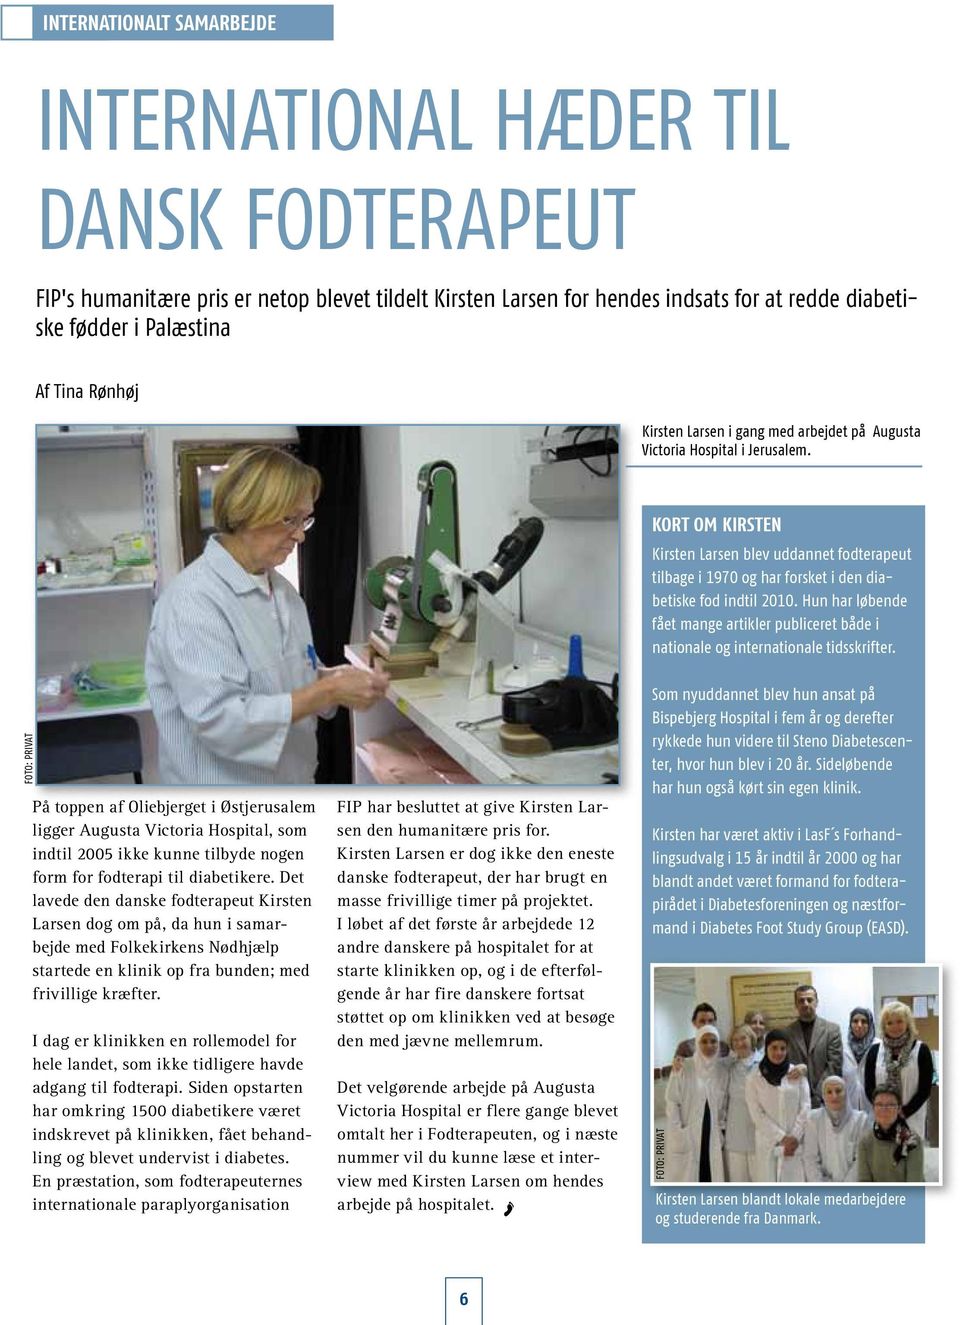 Kort om Kirsten Kirsten Larsen blev uddannet fodterapeut tilbage i 1970 og har forsket i den diabetiske fod indtil 2010.